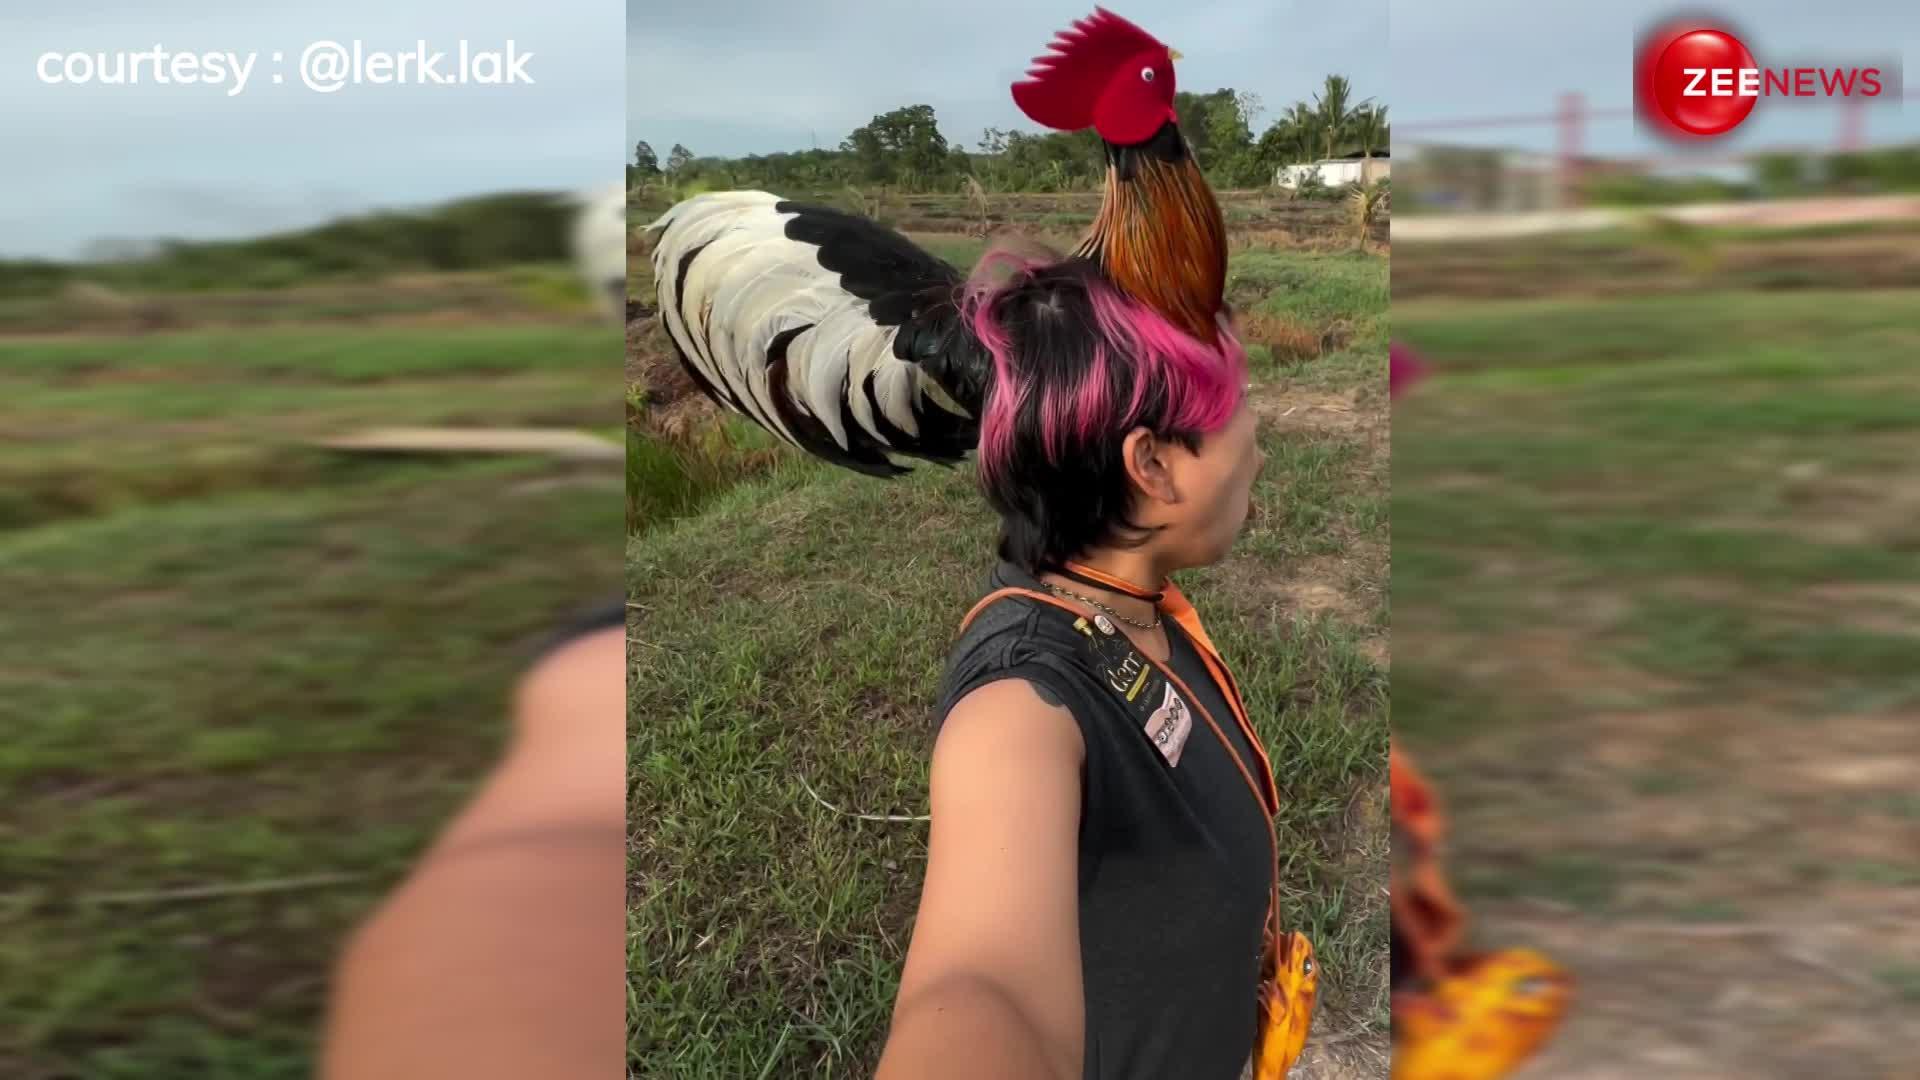 पहले कभी नहीं देखी होगी मुर्गे हेयर स्टाइल, शख्स का नया फैशन देख हिल गया लोगों का दिमाग-VIDEO